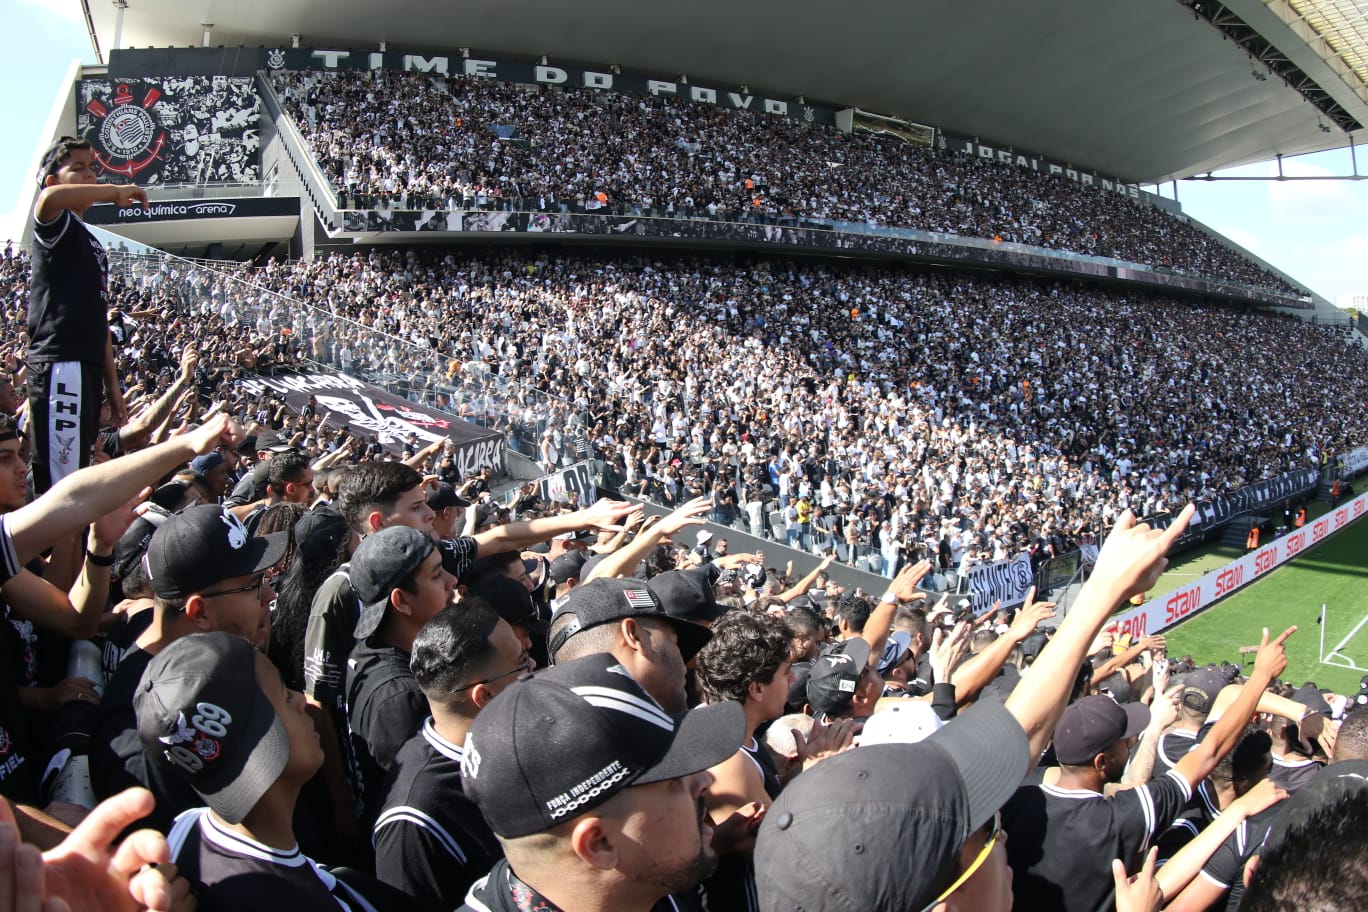 Onde assistir o jogo do Corinthians x Real Madrid hoje; sexta-feira, 1, em  comemoração de 113 anos